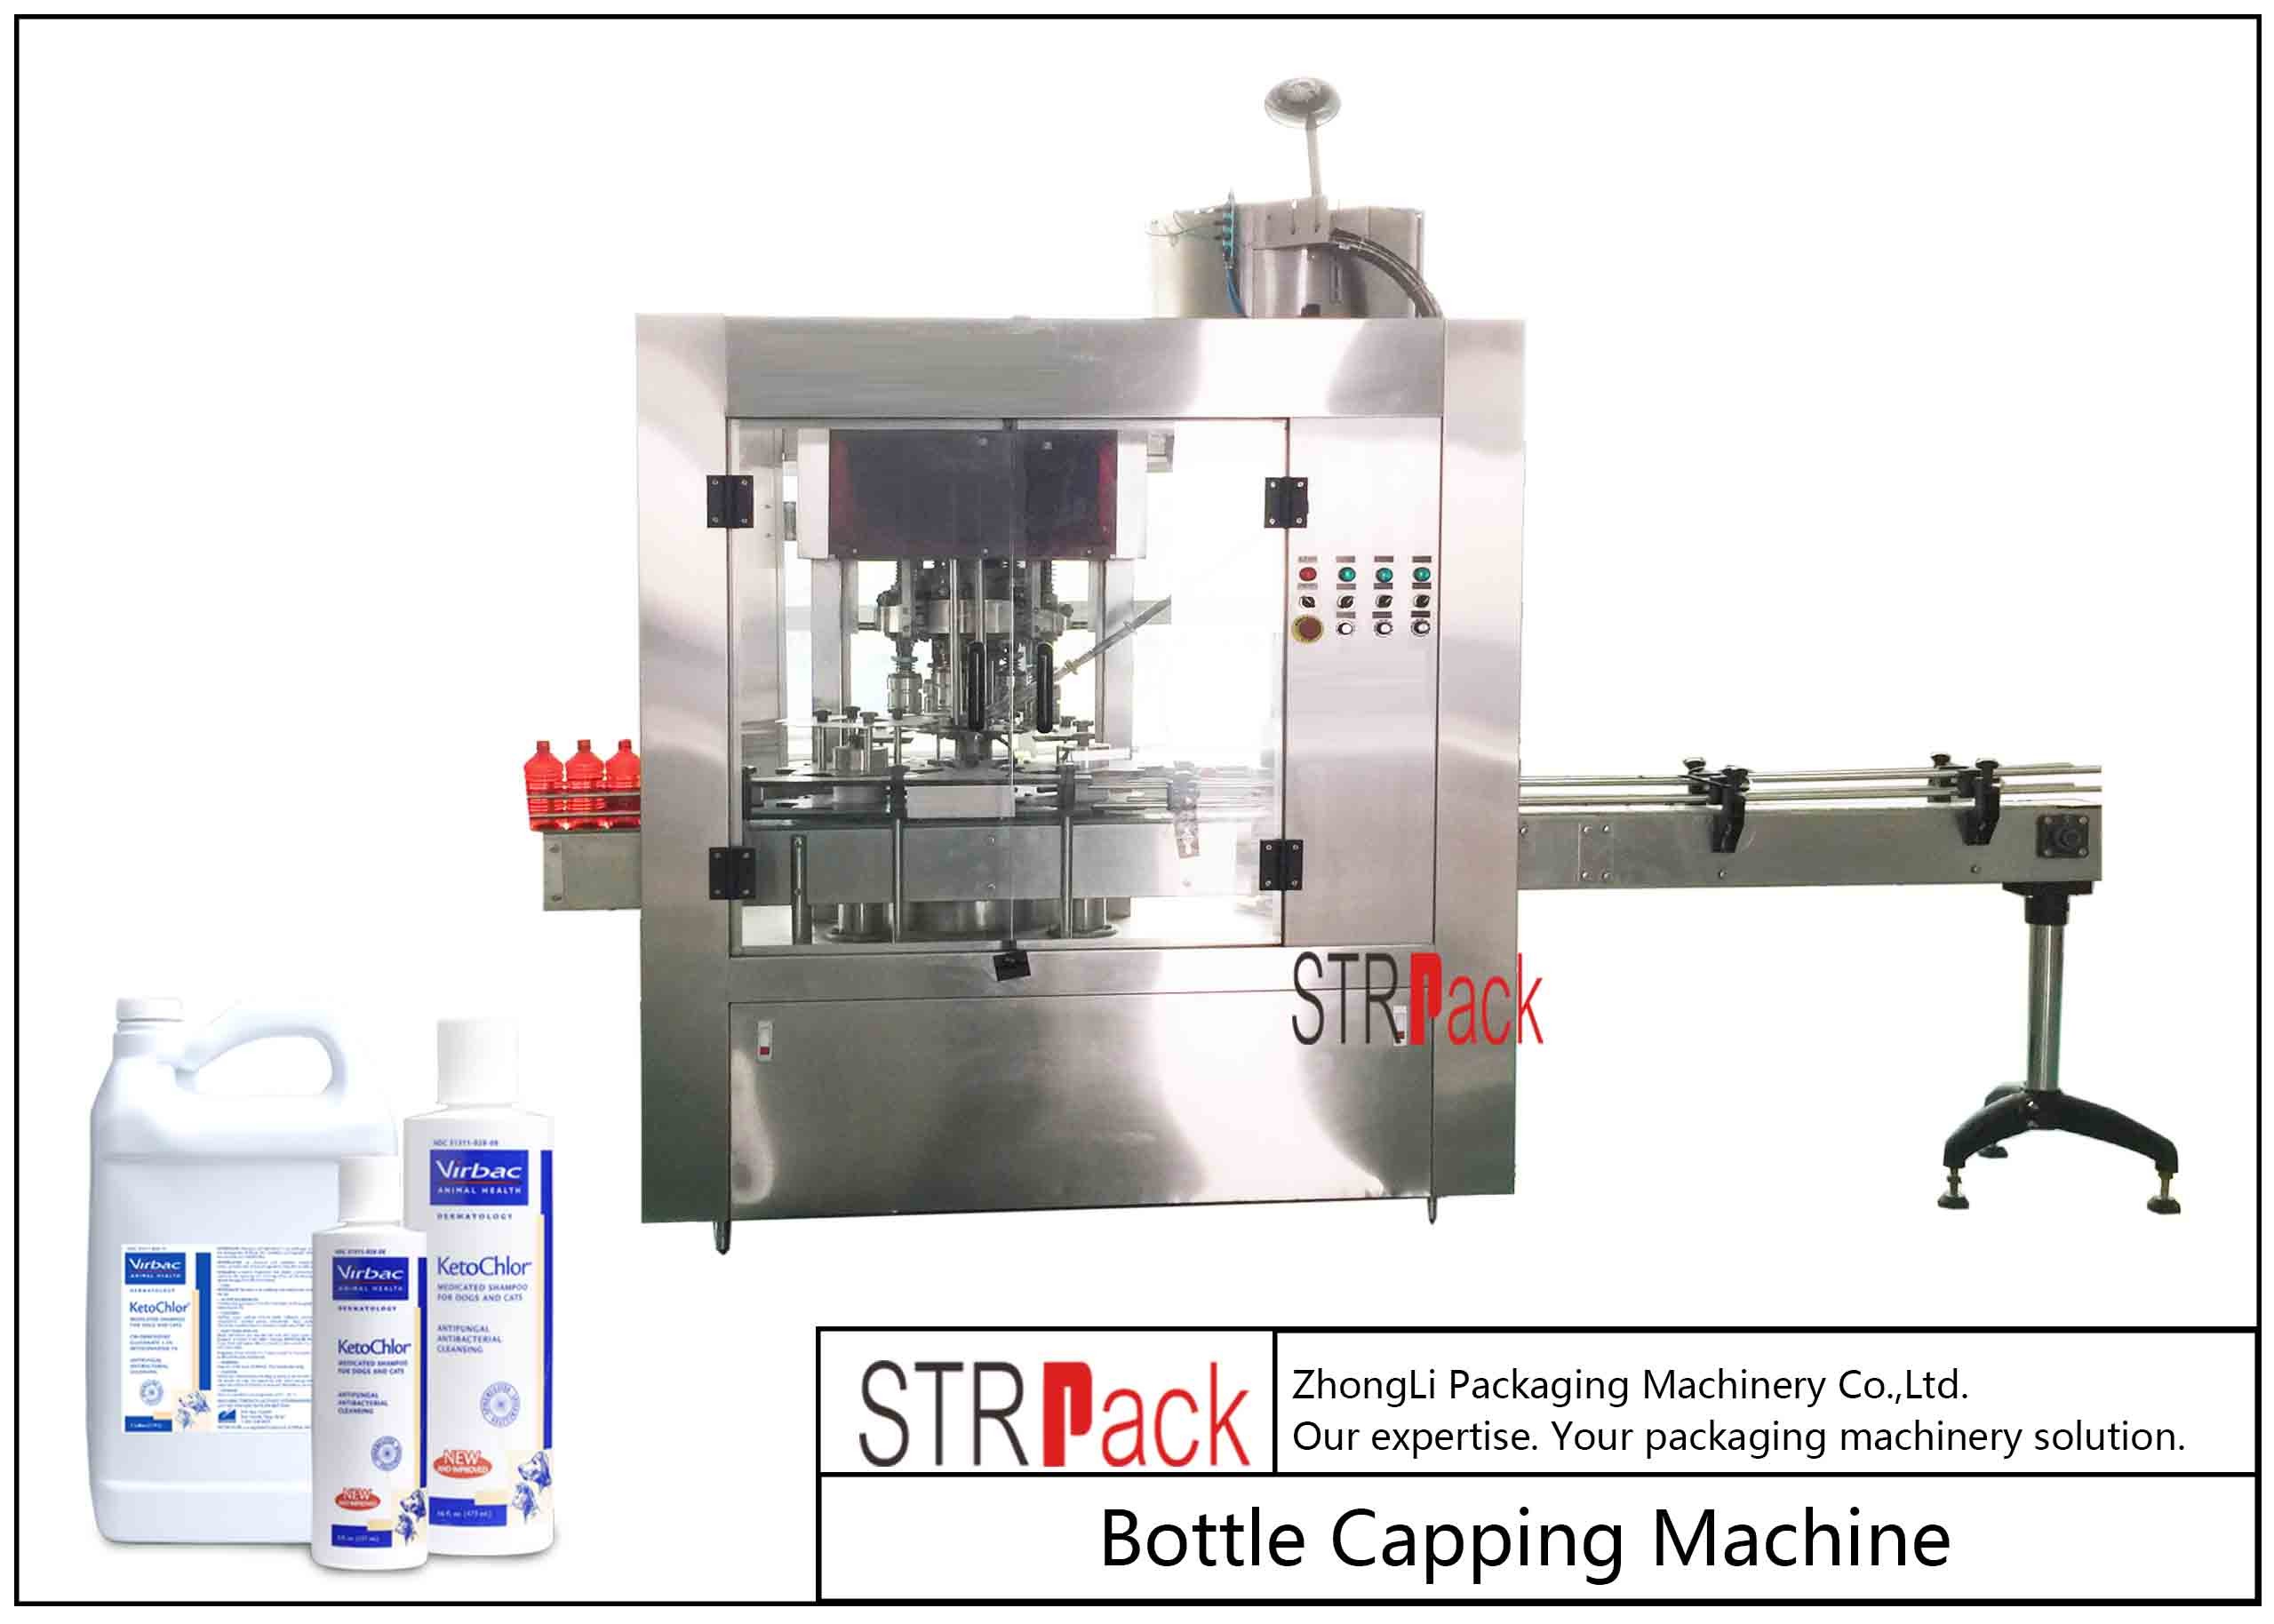 प्लास्टिक स्क्रू कैप्स के लिए रोटरी बोतल कैपिंग मशीन / 4 हेड्स रोटरी कैपिंग मशीन